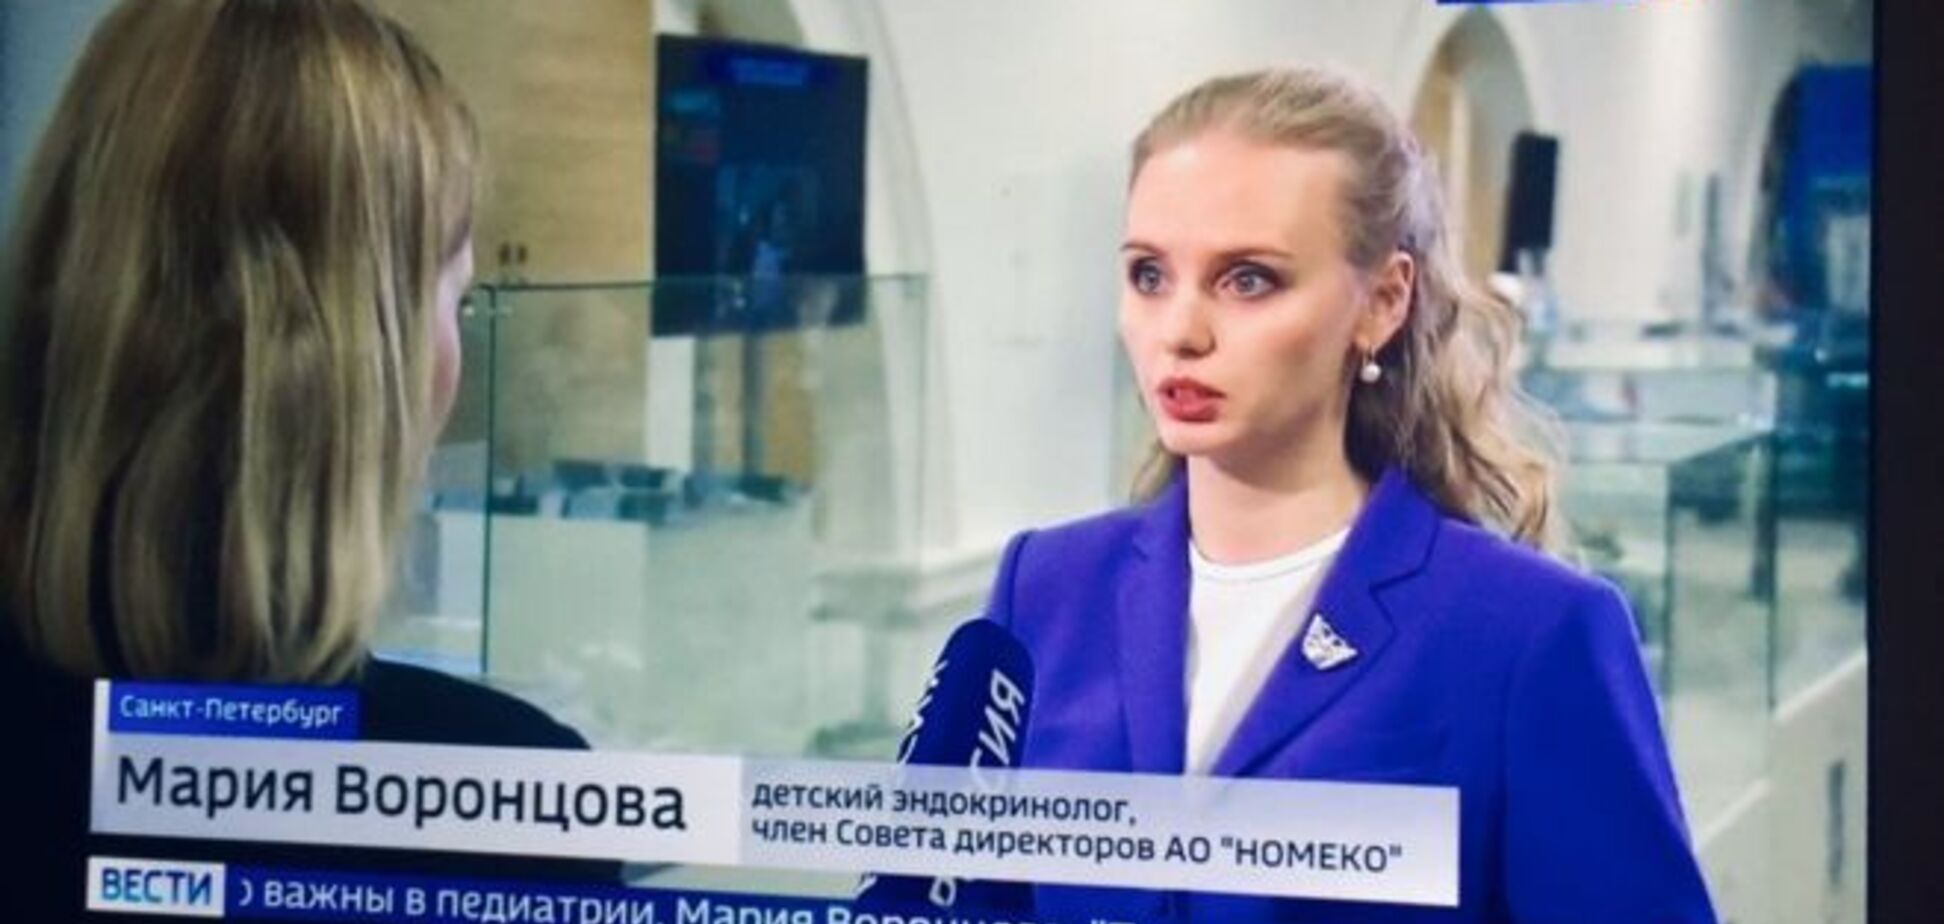 СМИ узнали о тайном бизнессе 'дочери Путина': всплыли подробности